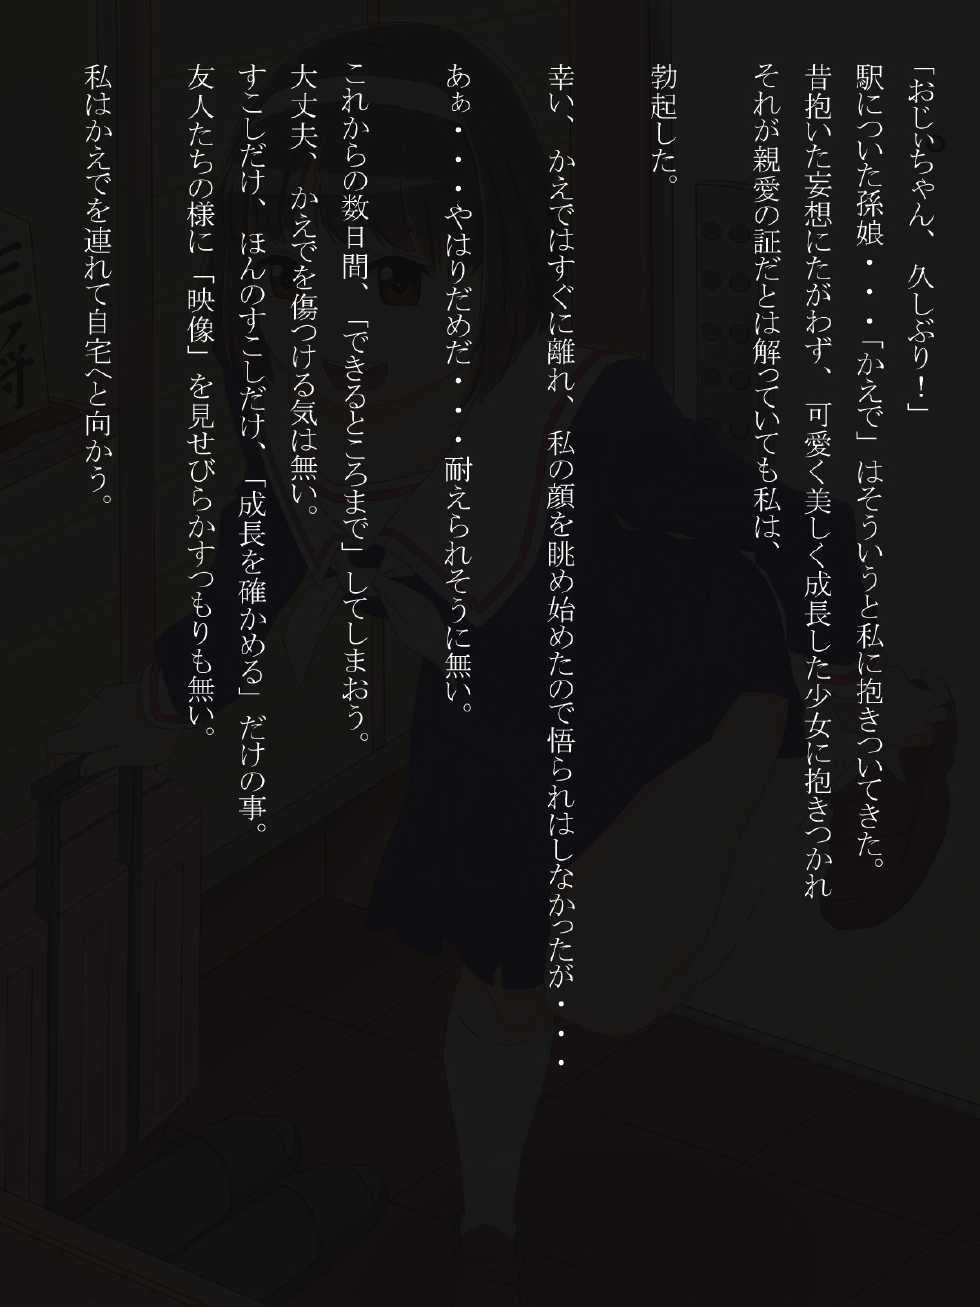 [Minobu Gentle] Tanshin Tomari ni Kita Magomusume wo Suiminyaku wo Nomasete Okashite Shimatta - Page 6